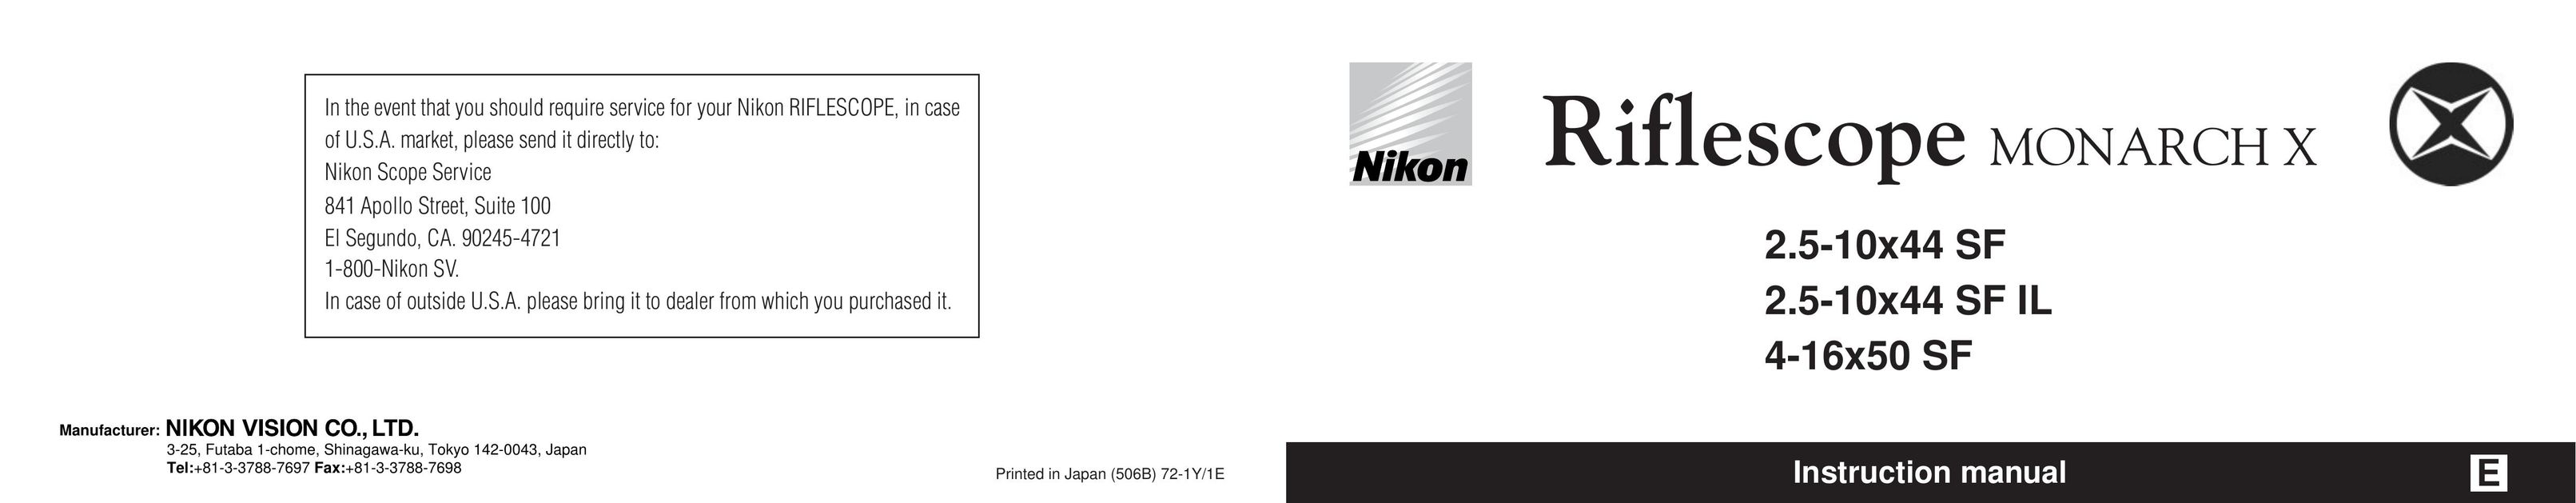 Nikon 4-16x50 SF Binoculars User Manual